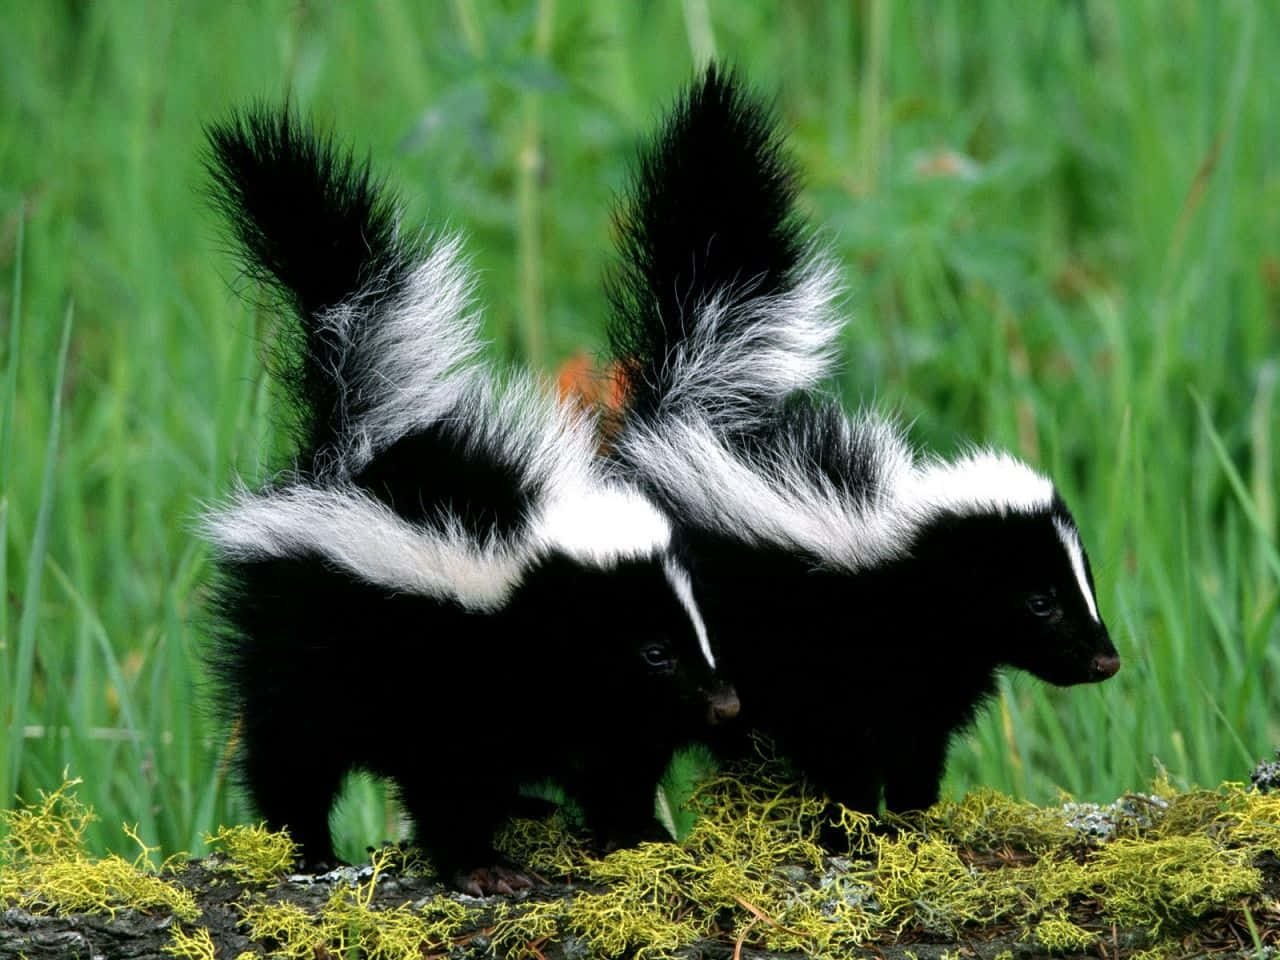 To skunks stående på en log i græsset